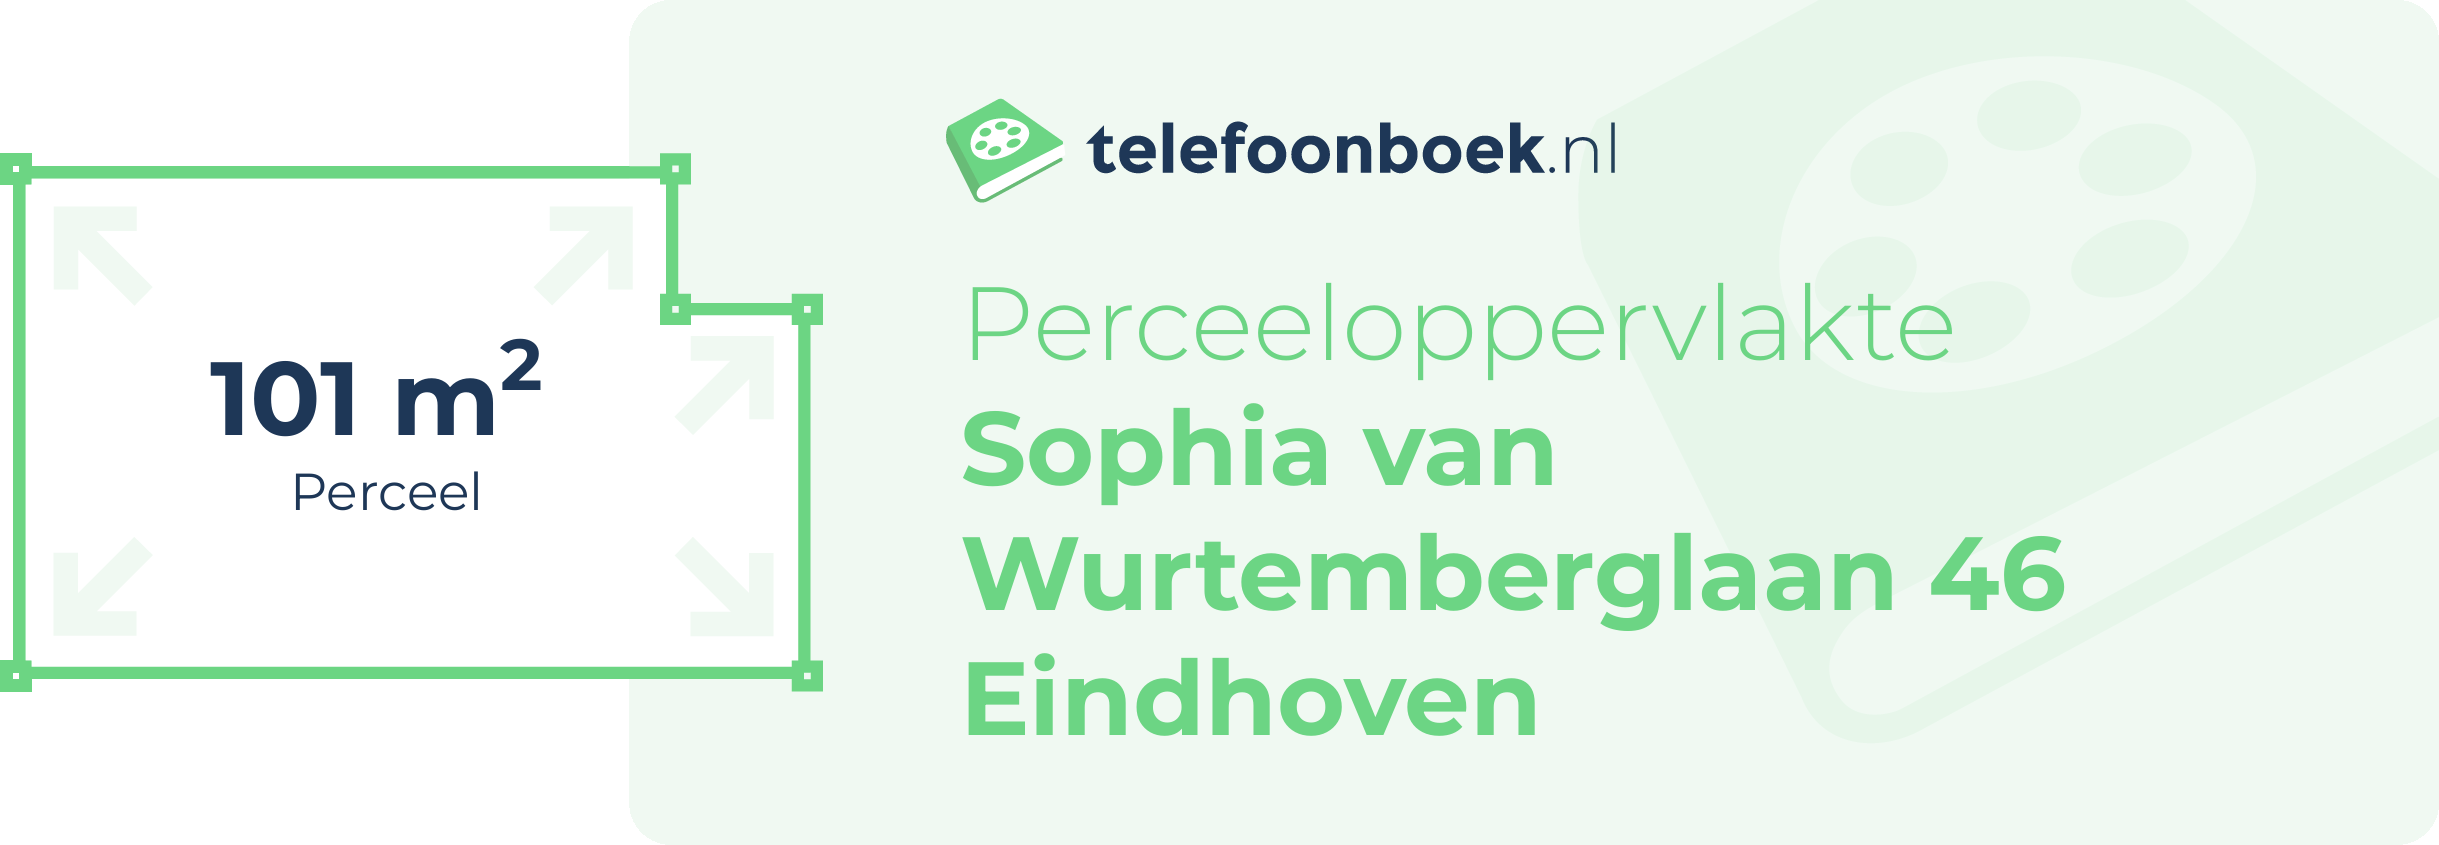 Perceeloppervlakte Sophia Van Wurtemberglaan 46 Eindhoven